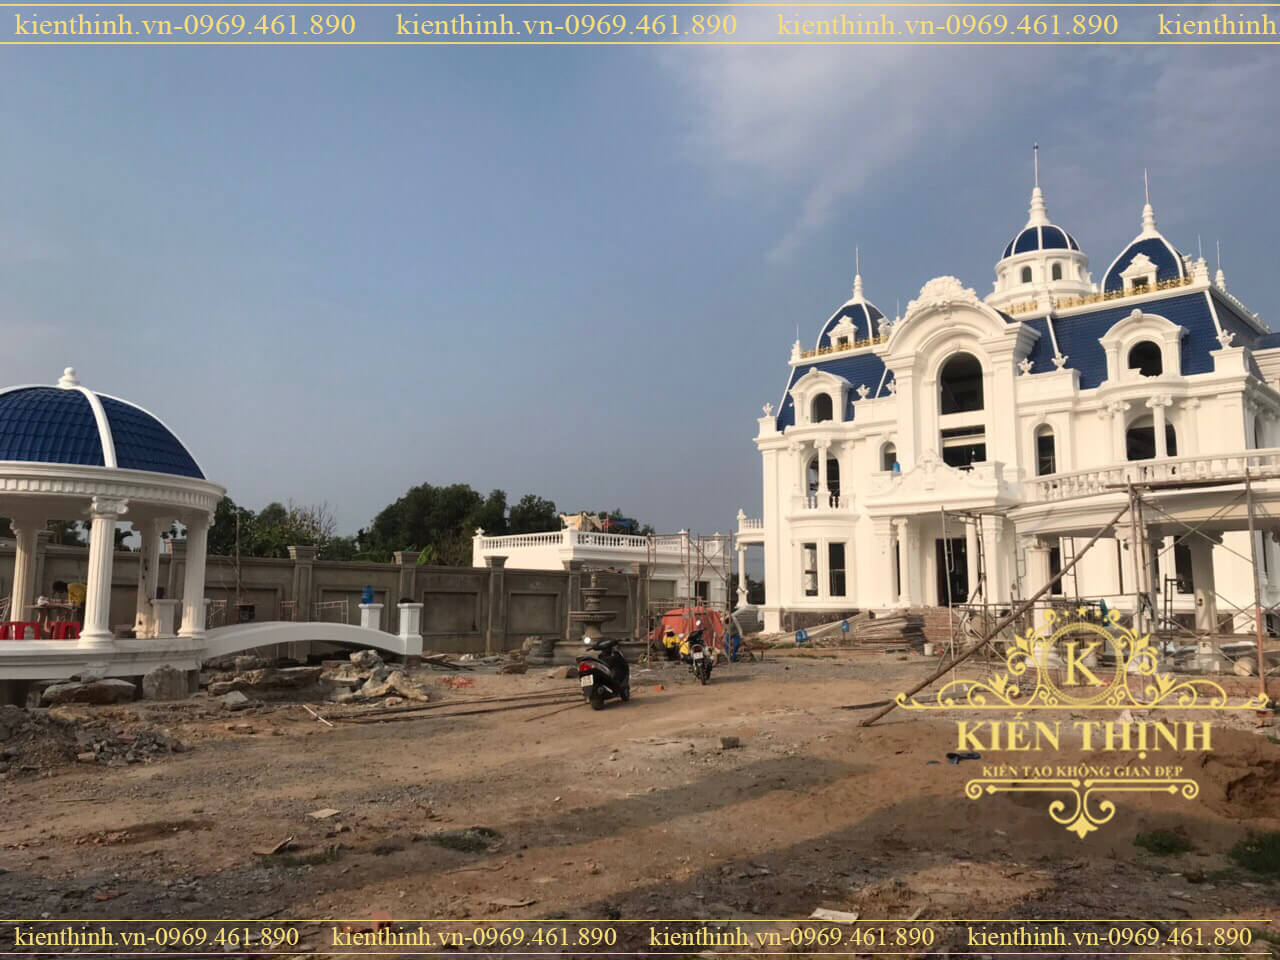 Thiết kế thi công lâu đài - dinh thự tân cổ điển 3 tầng Siêu đẹp ở Đồng Nai